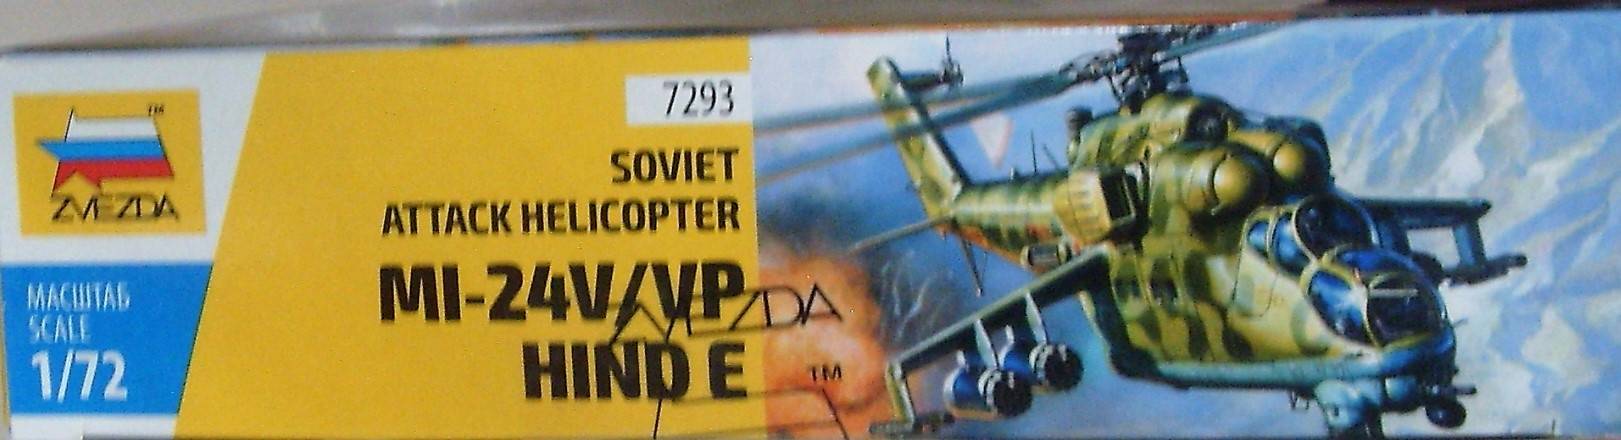 Иллюстрация 17 из 21 для Советский ударный вертолет Ми-24 В/ВП "Крокодил" (7293) | Лабиринт - игрушки. Источник: Соловьев  Владимир